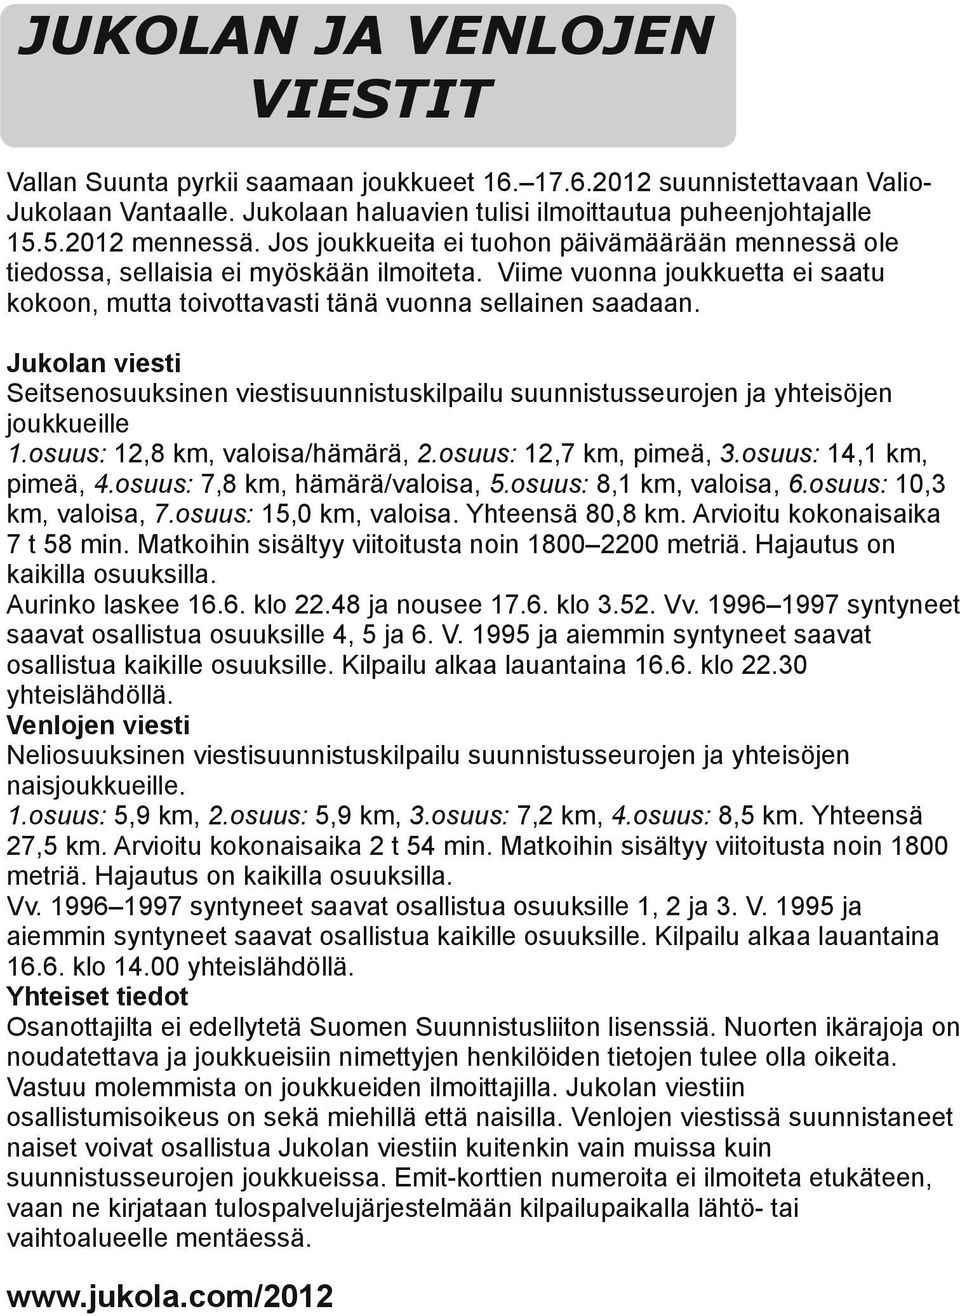 Jukolan vies Seitsenosuuksinen viessuunnistuskilpailu suunnistusseurojen ja yhteisöjen joukkueille 1.osuus: 12,8 km, valoisa/hämärä, 2.osuus: 12,7 km, pimeä, 3.osuus: 14,1 km, pimeä, 4.